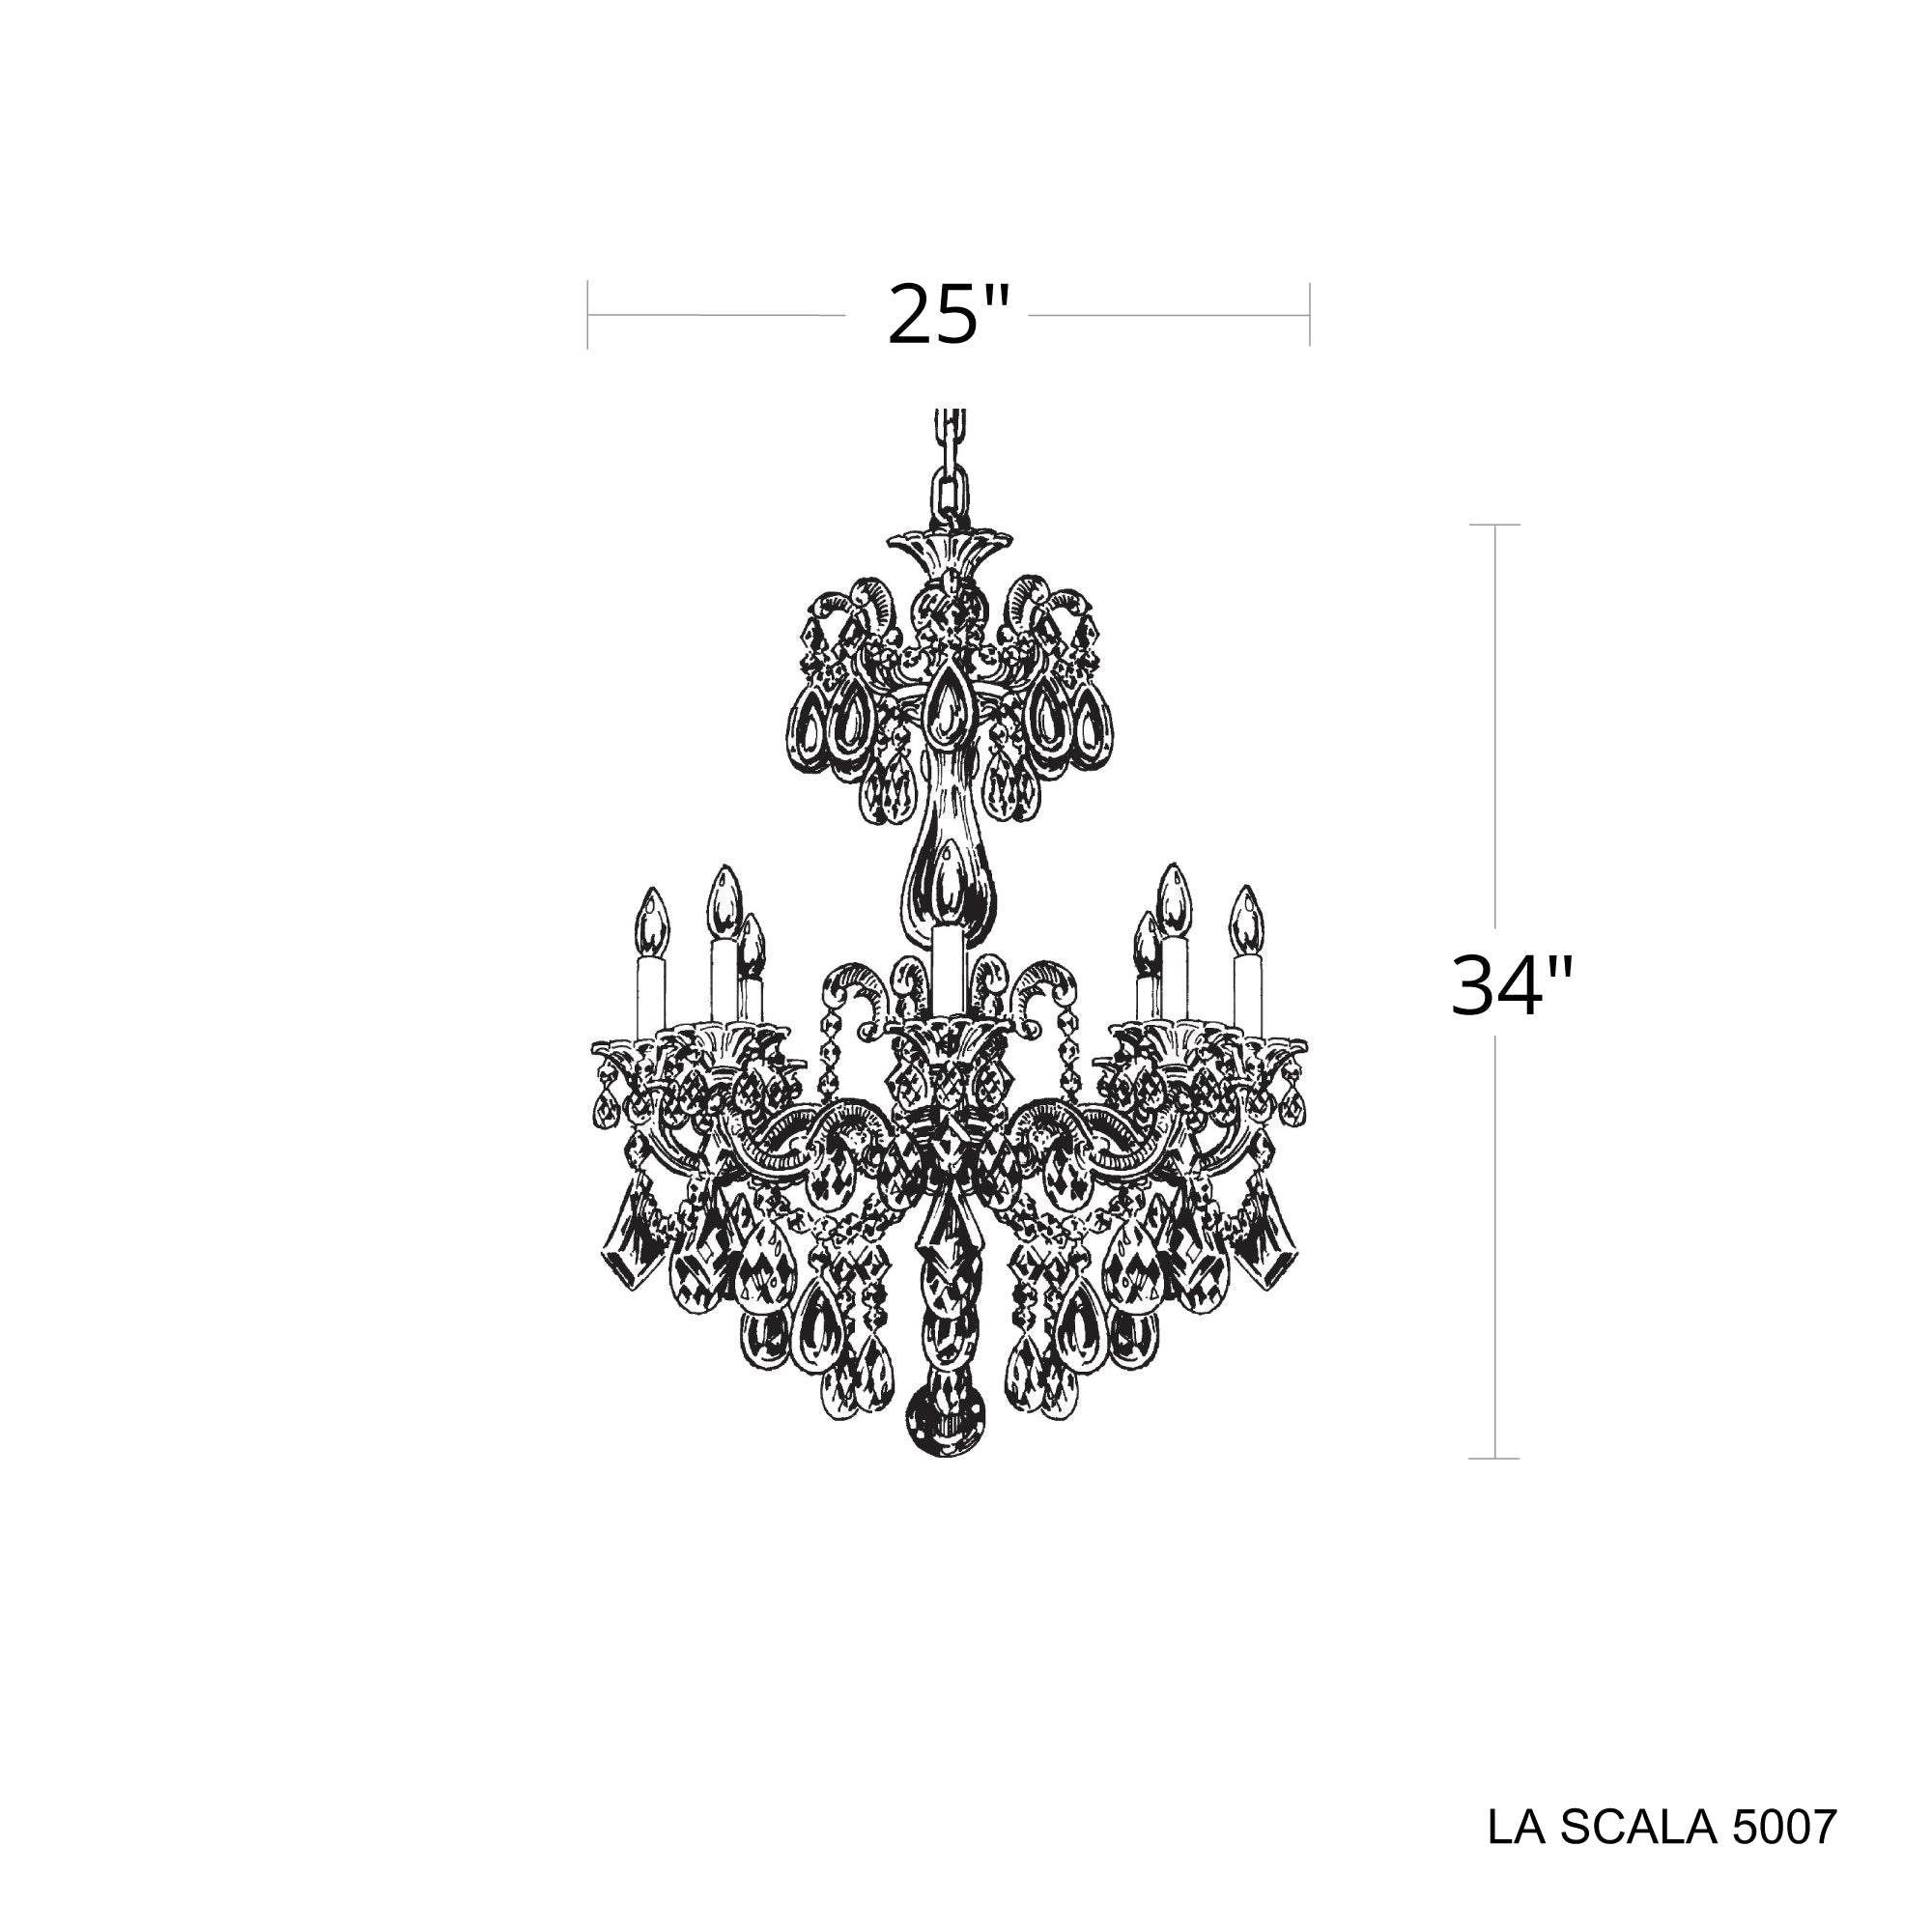 La Scala 8-Light Chandelier